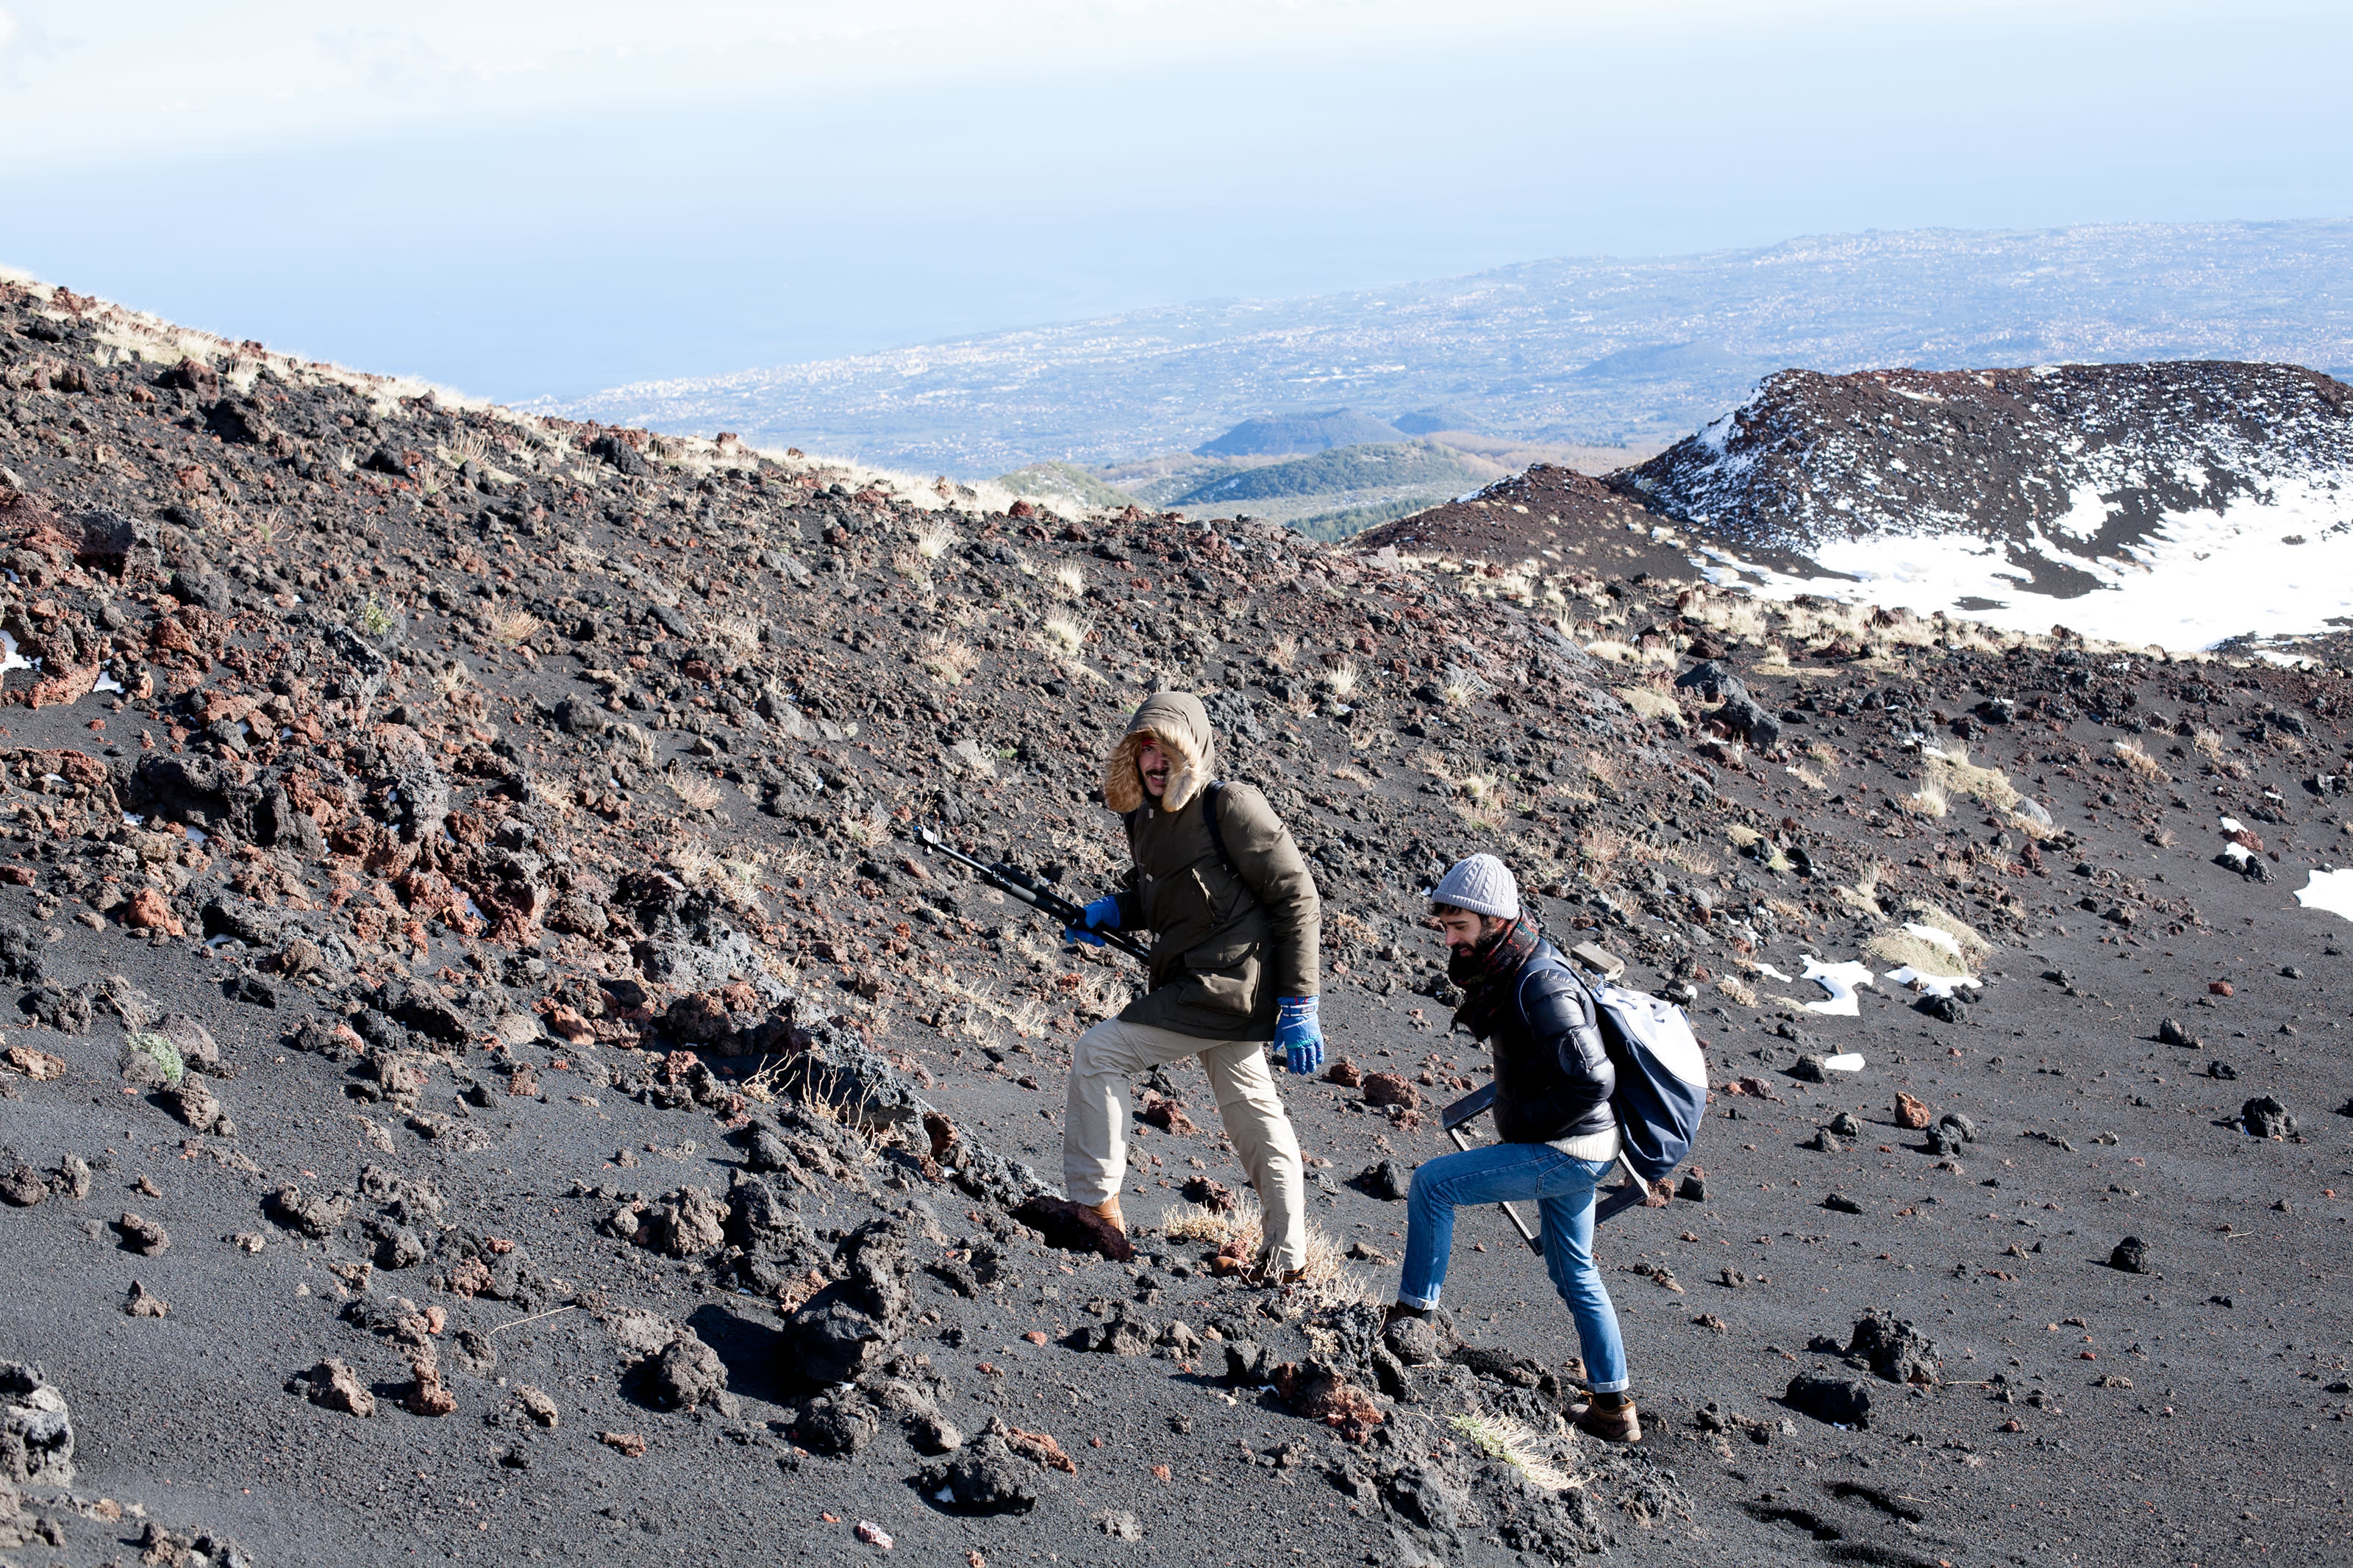 Simone Farresin and Andrea Trimarchi explore the Etna landscape.